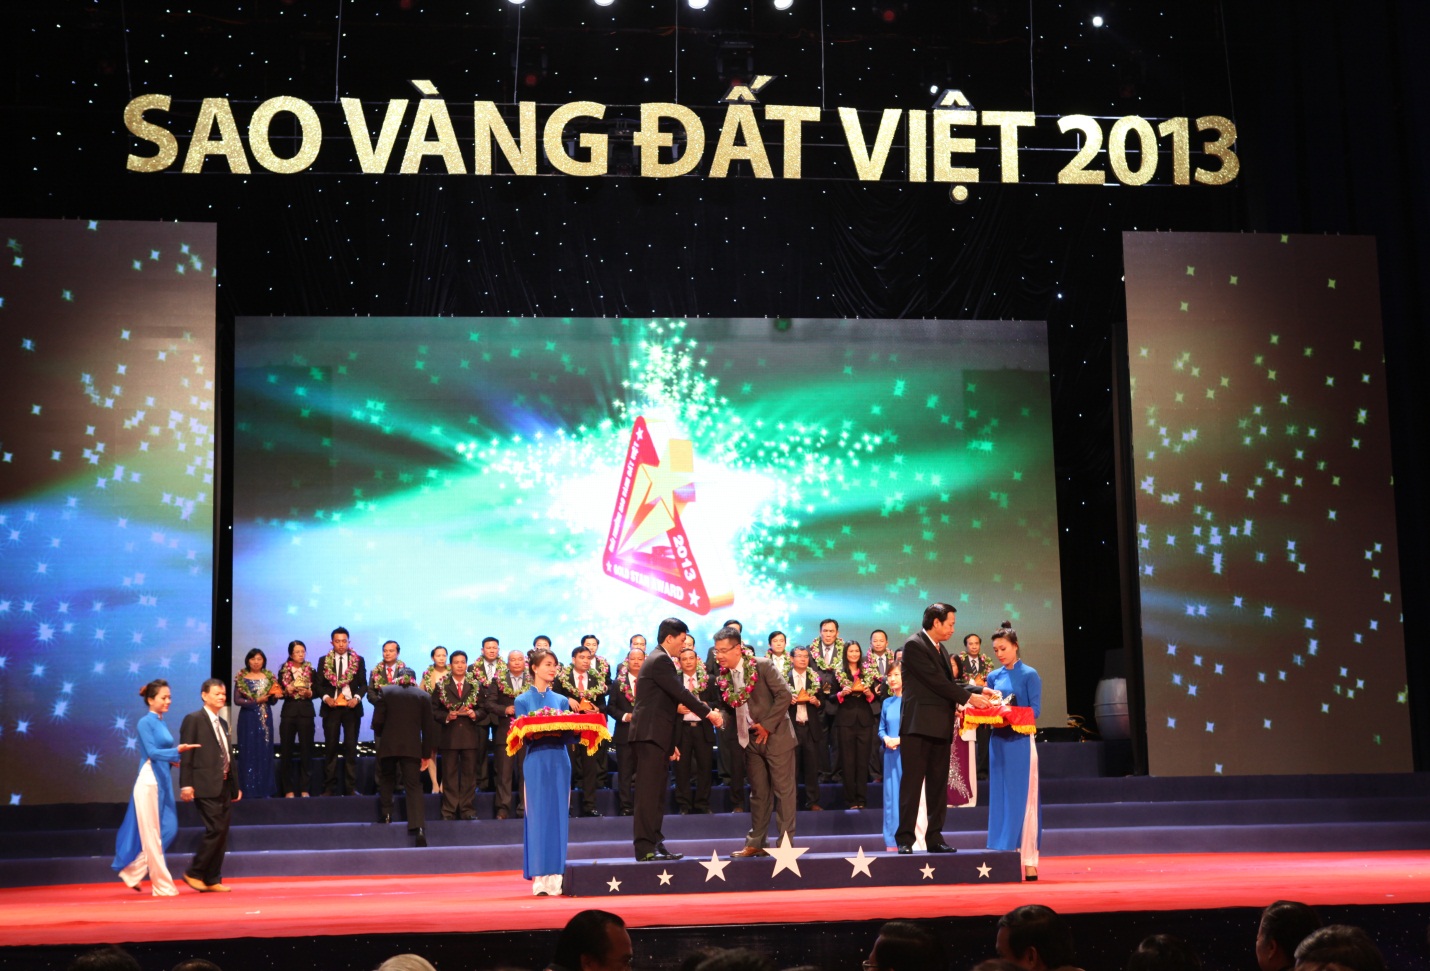  Ông Nguyễn Bá Hùng, Chủ tịch HĐQT kiêm Tổng GĐ Tập đoàn Nhựa Đông Á nhận giải thưởng Sao Vàng Đất Việt